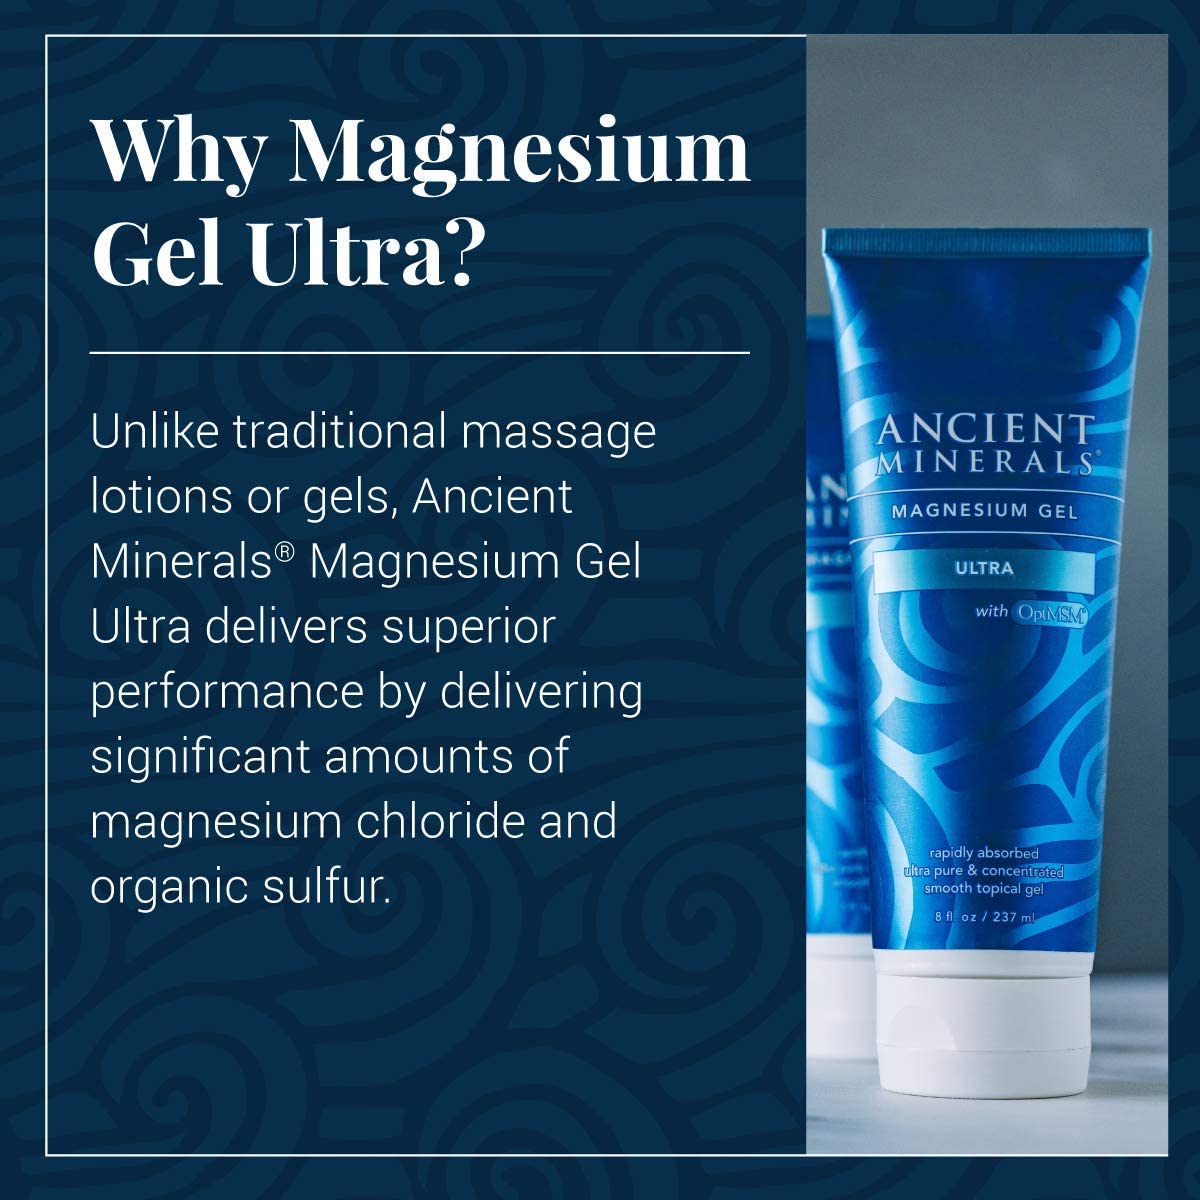 Magnesium Gel Ultra